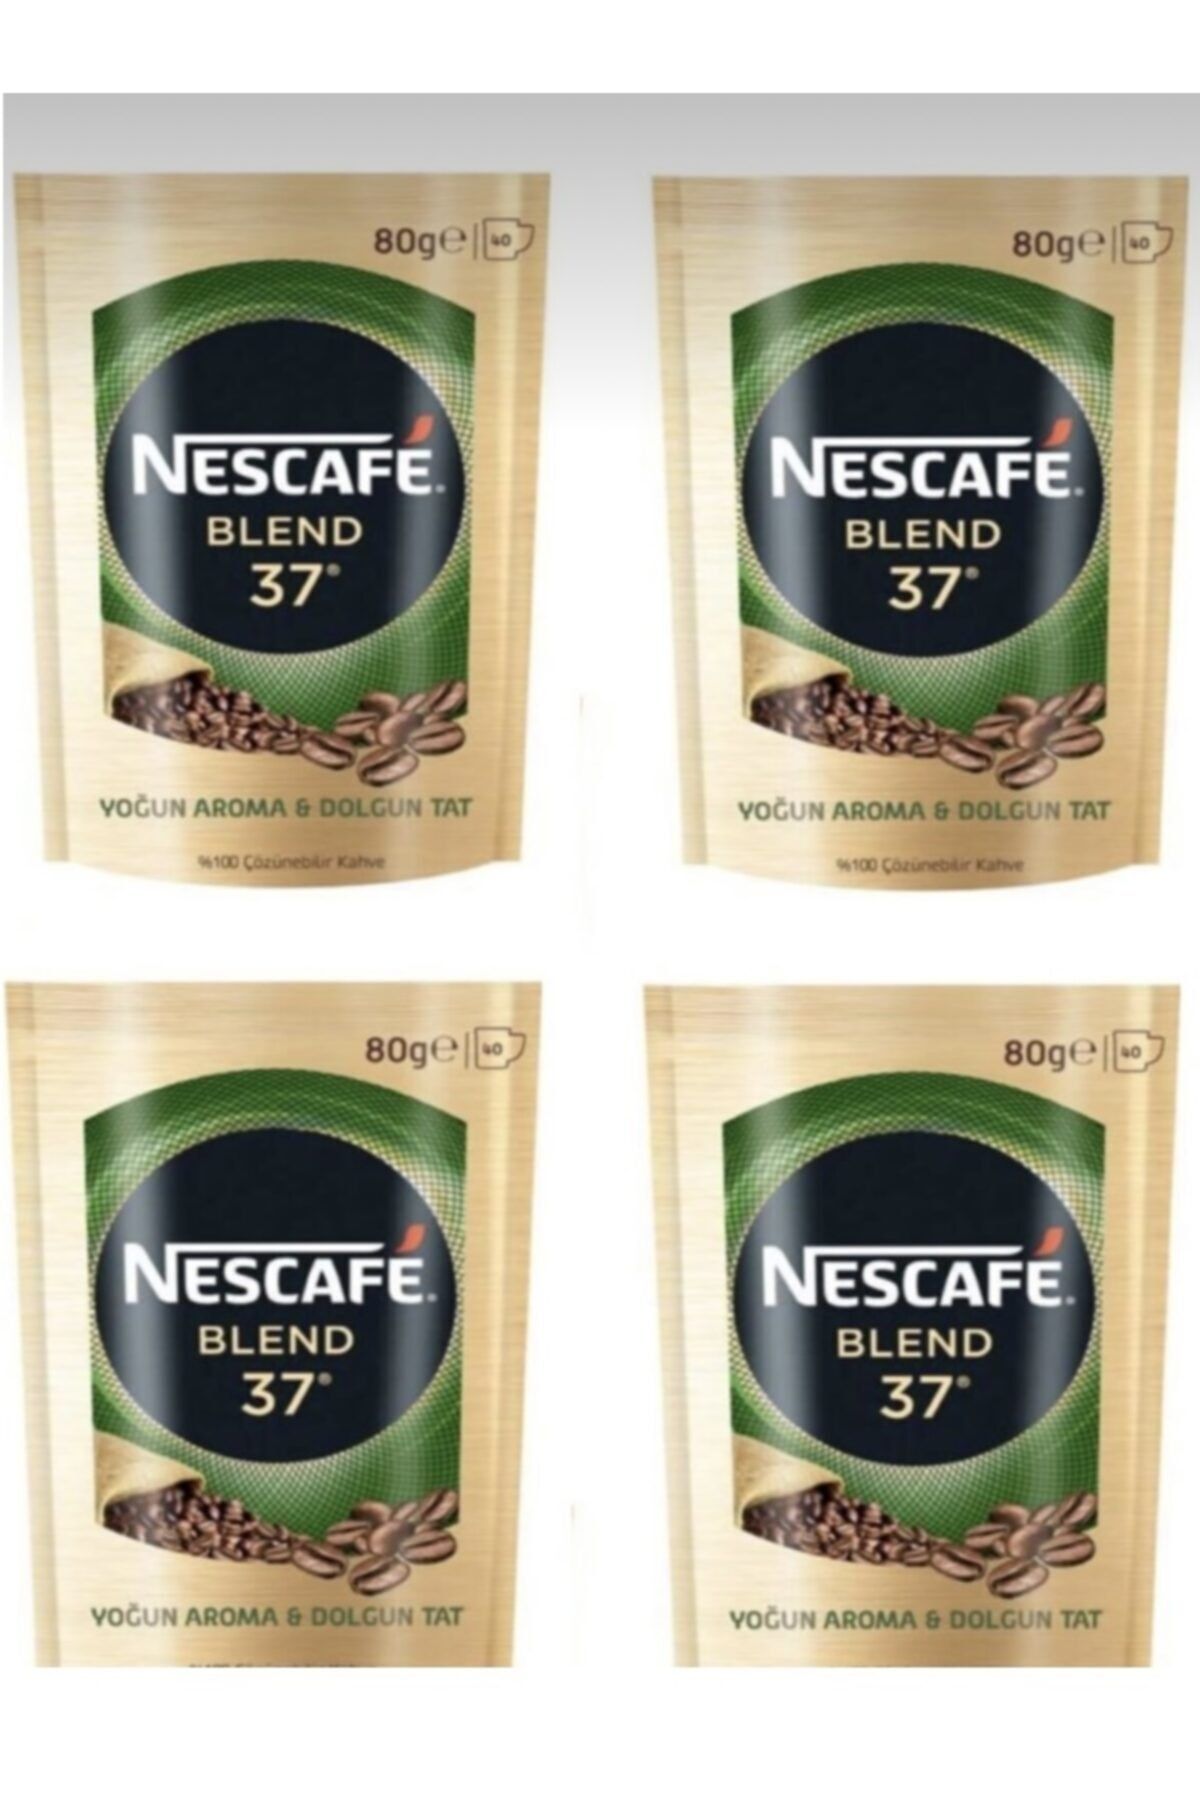 Nescafe Blend 37 Granül Kahve 80 Gr